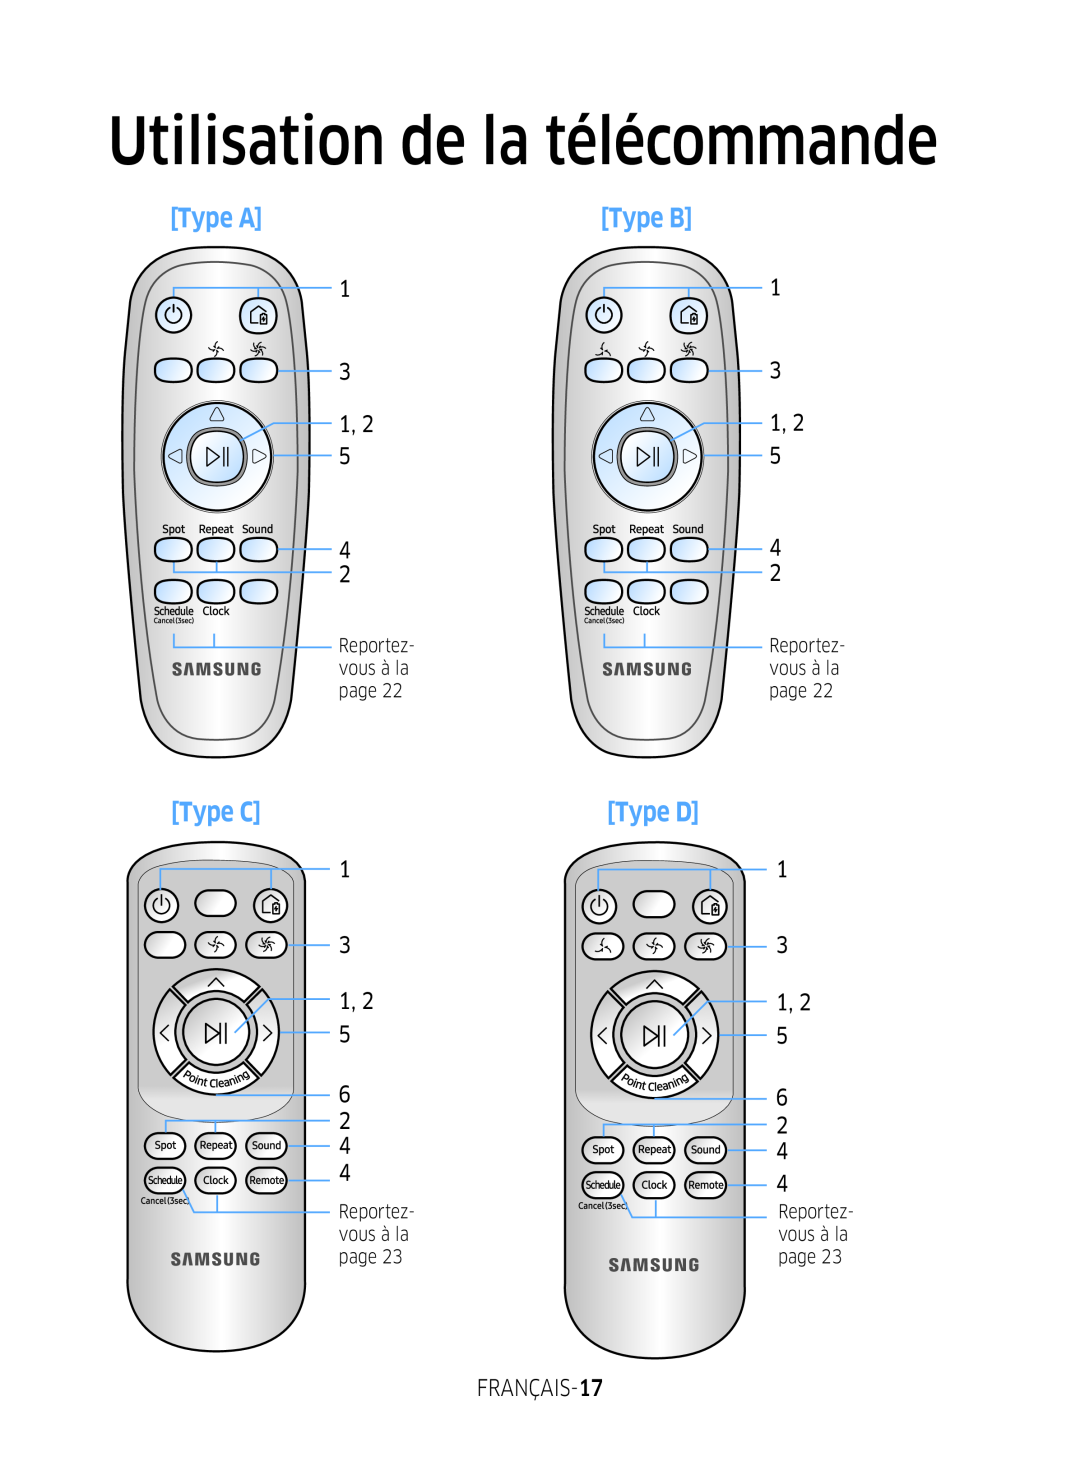 Samsung VR1GM7020UG/EG, VR1DM7020UH/EG, VR2GM7050UU/EG manual Utilisation de la télécommande, Type A, Type C, Type B, Type D 